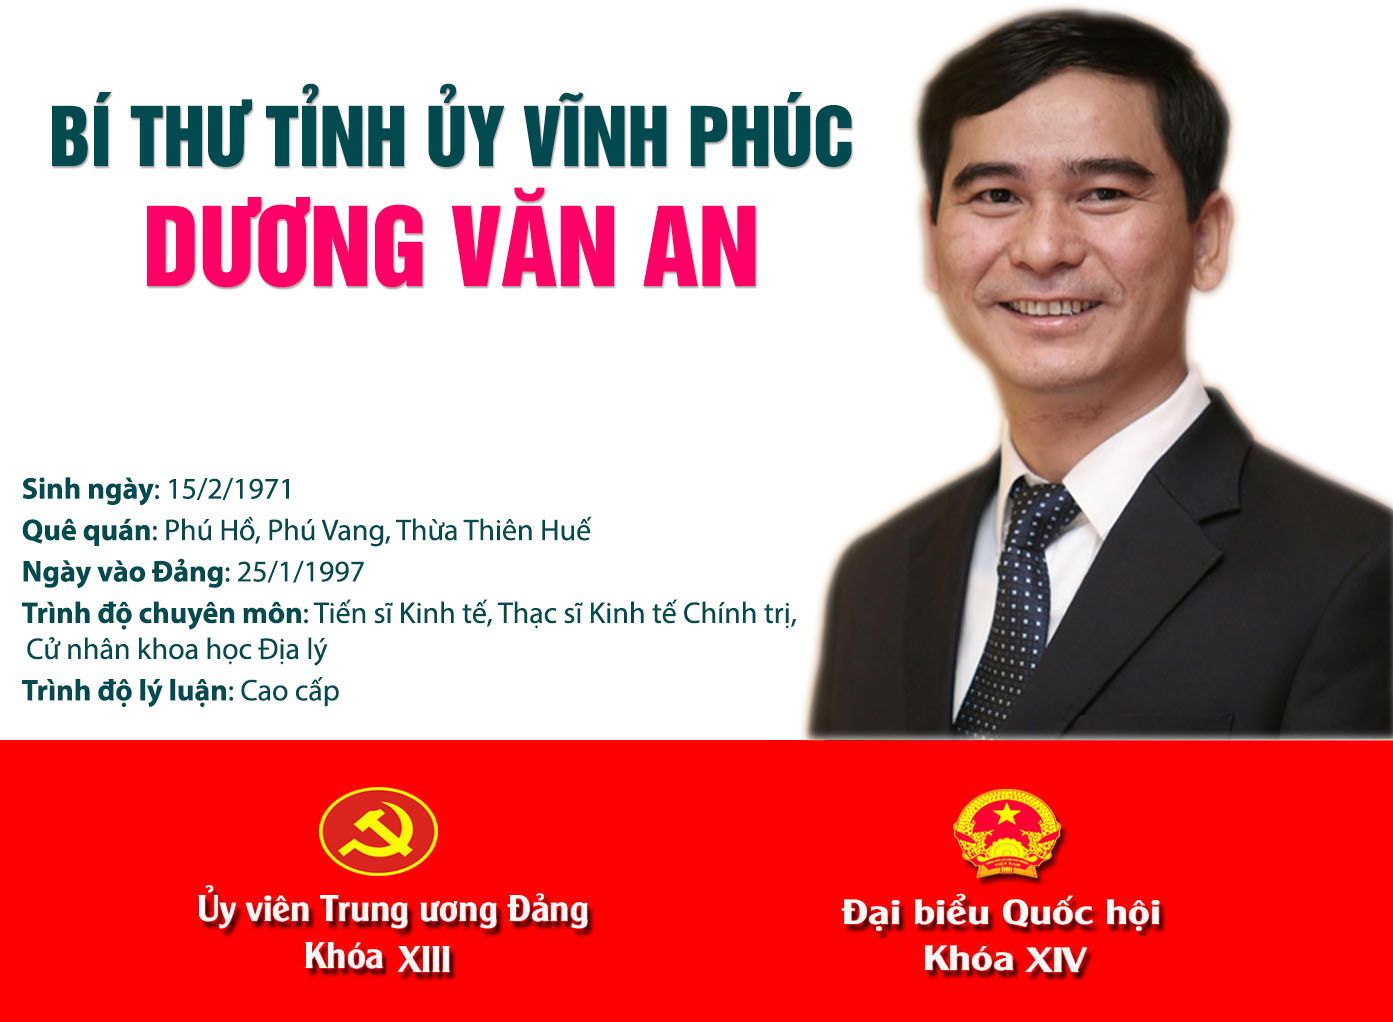 Infographic: Chân dung tân Bí thư Tỉnh ủy Vĩnh Phúc Dương Văn An